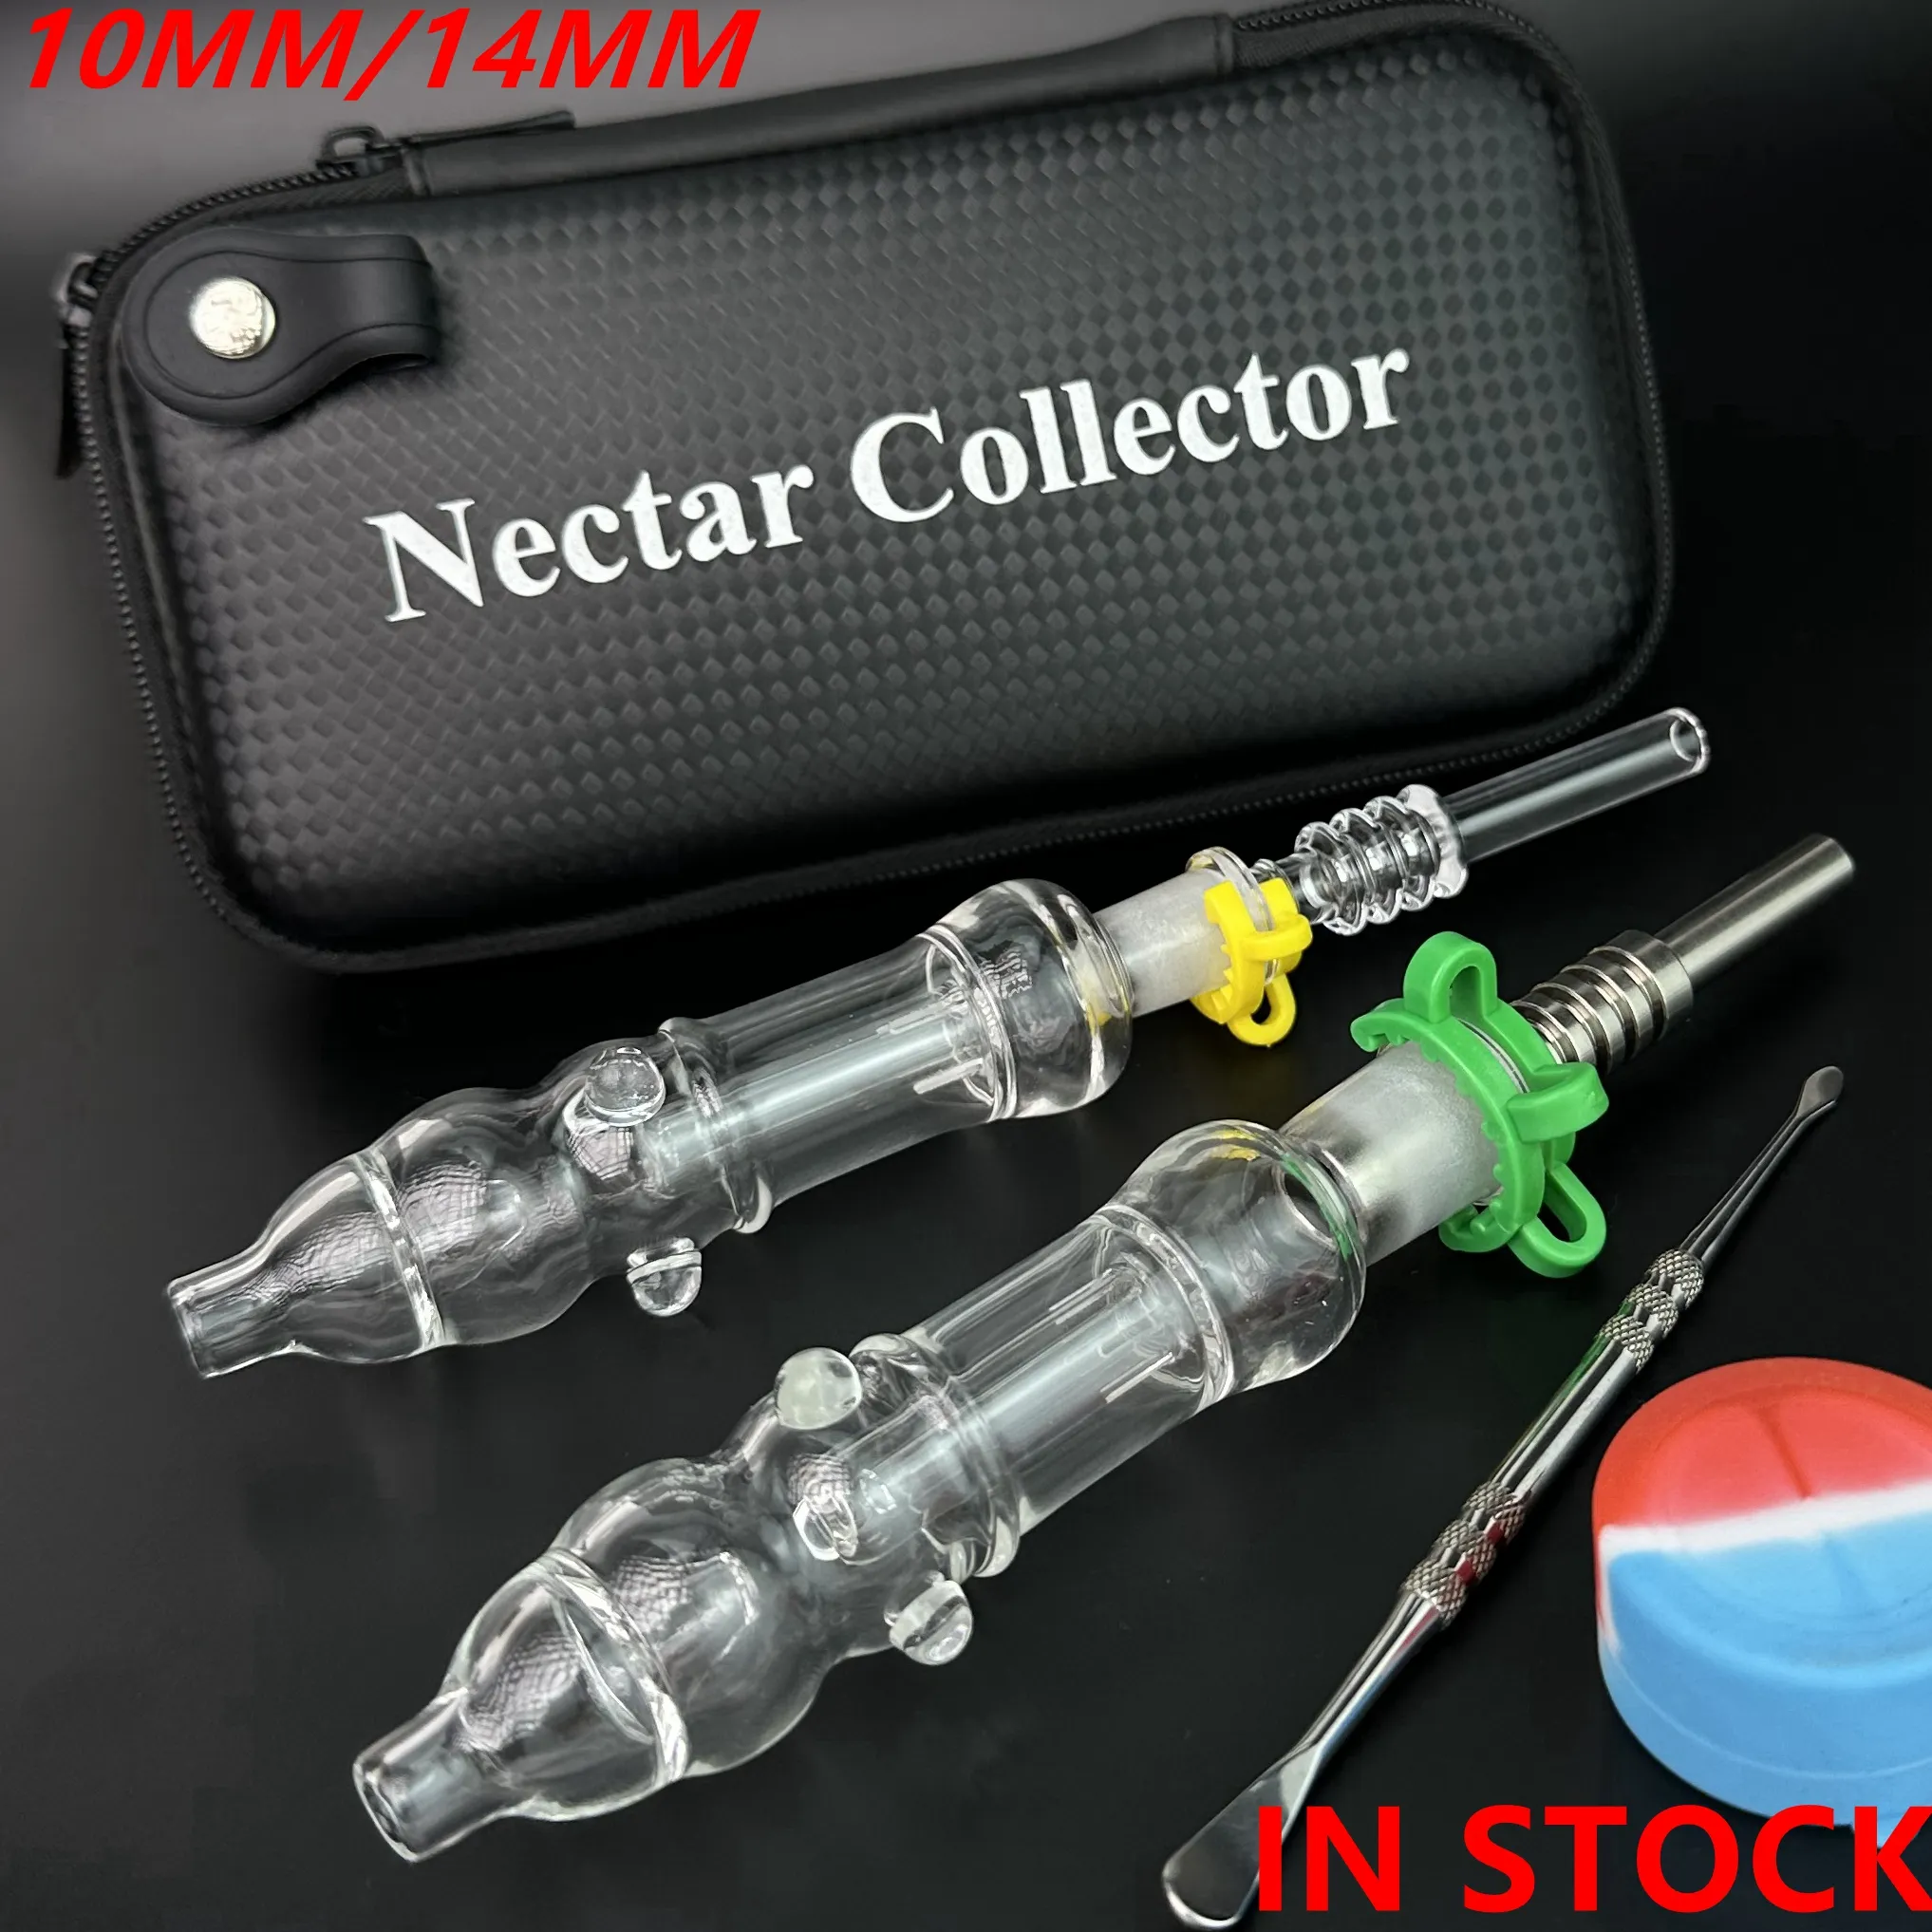 Kit coletor de néctar com pontas de unhas de titânio ou ponta de quartzo 10mm 14mm Nector NC Collector Kits Concentrado Dab Straw Gift Bag